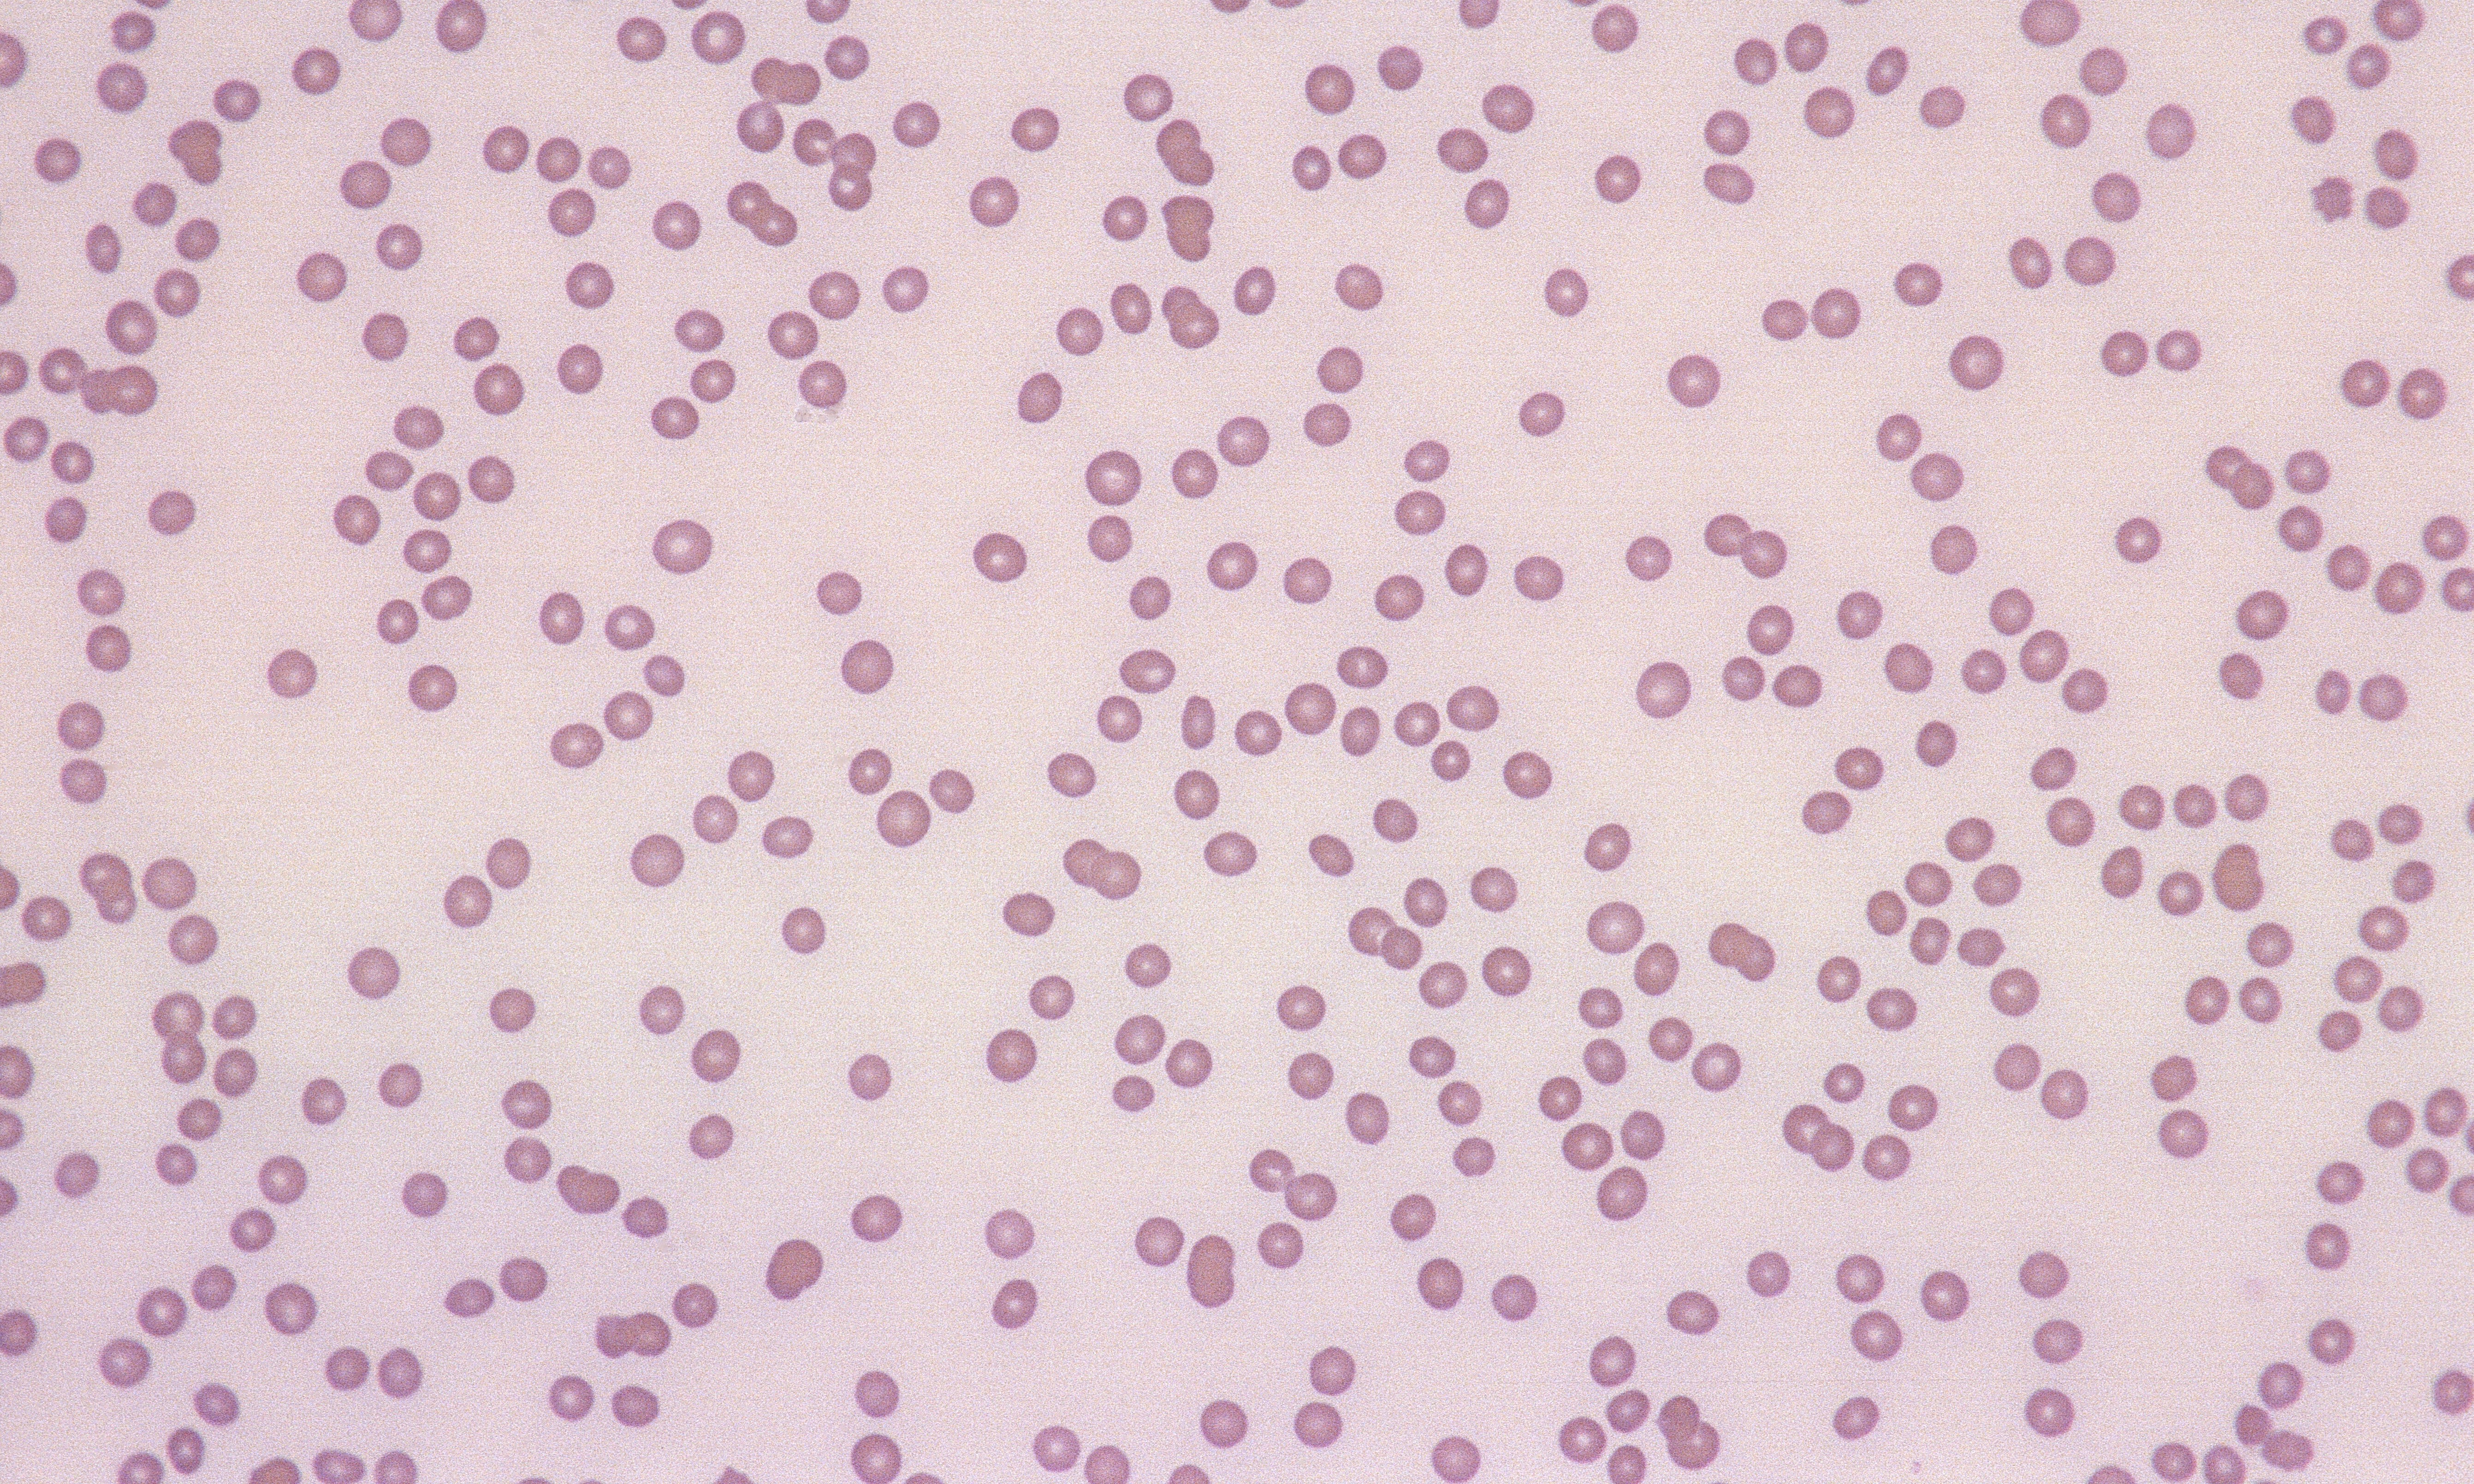 Platelets 10 (Canine 4) - Thrombocytopenia